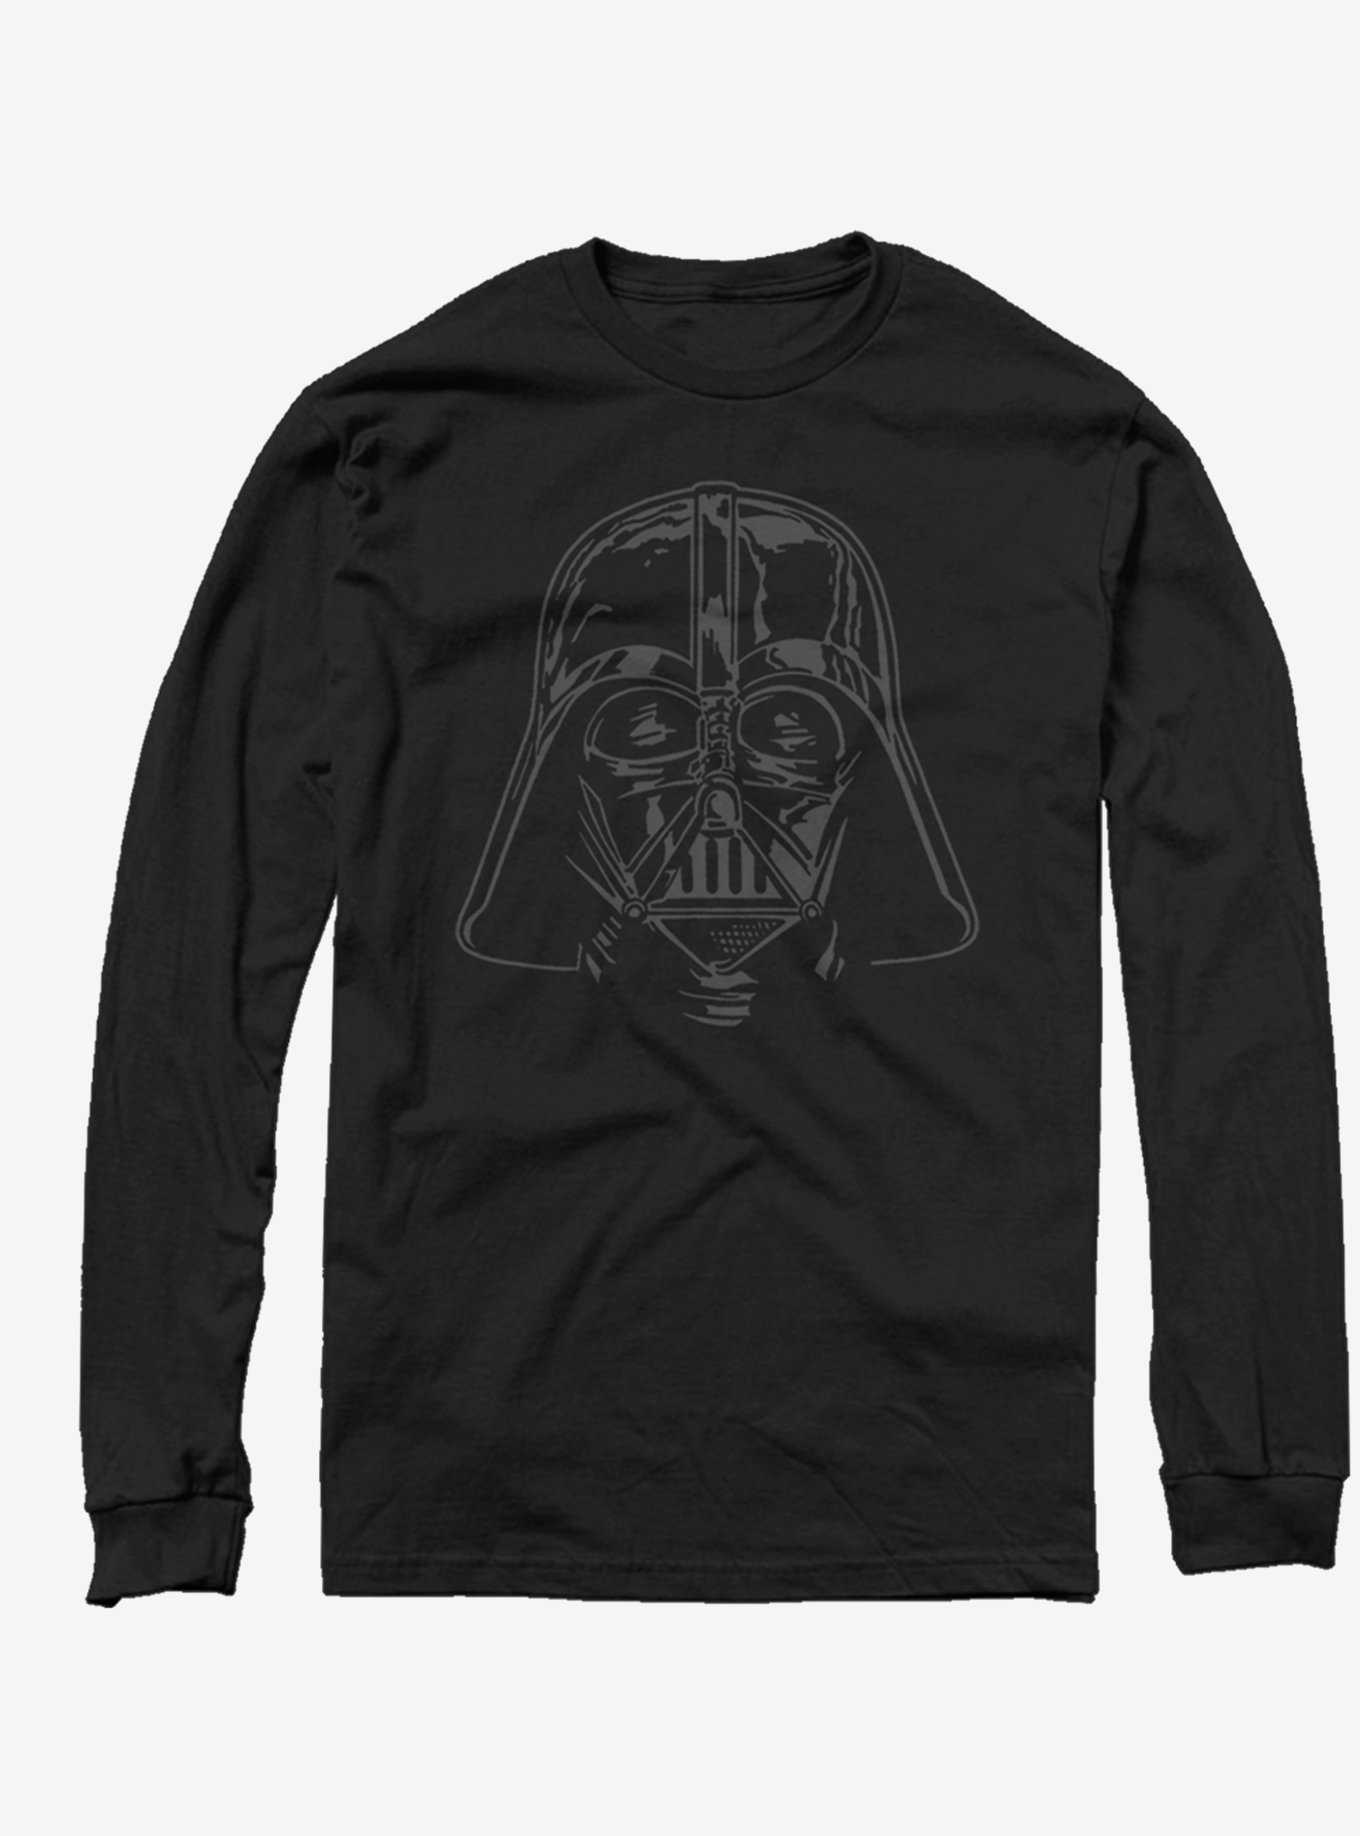 Star Wars Darth Vader Face Long-Sleeve T-Shirt, , hi-res